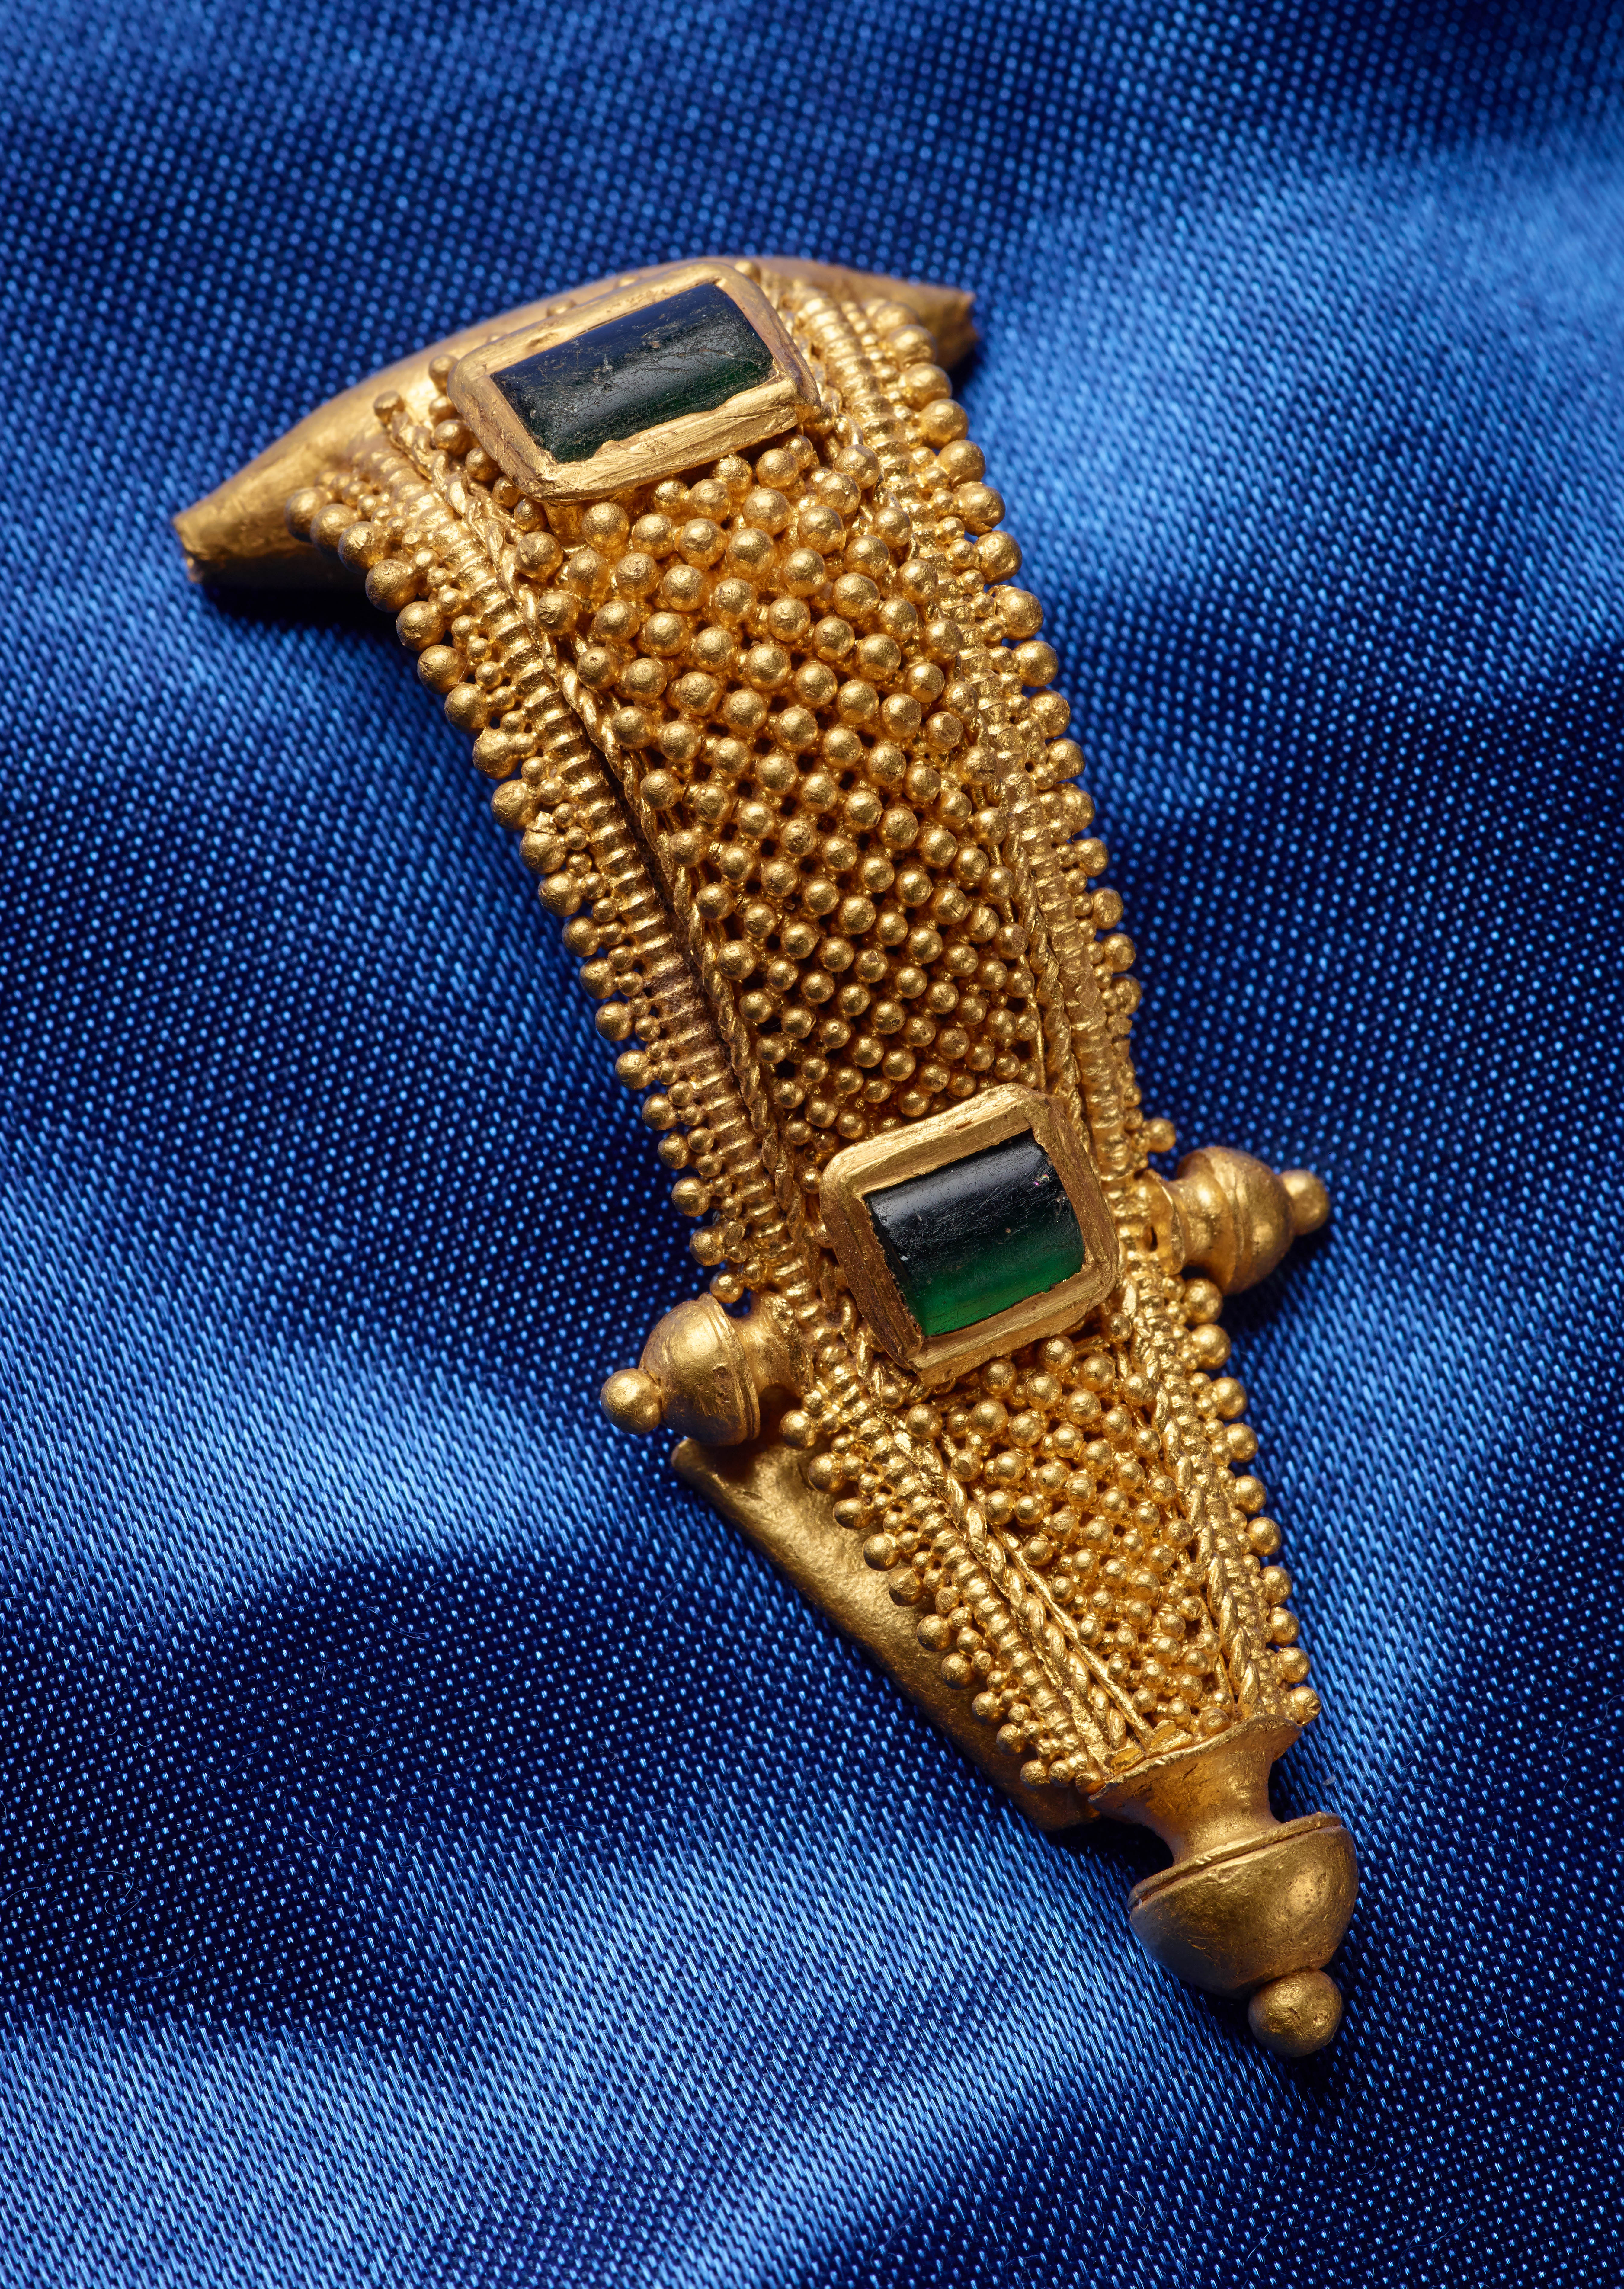 Kostbarer Goldschmuck: Diese besondere Rollenkappenfibel mit Glasperlen stammte ursprünglich wahrscheinlich aus einer renommierten Goldschmiedewerkstatt des Römischen Reichs.